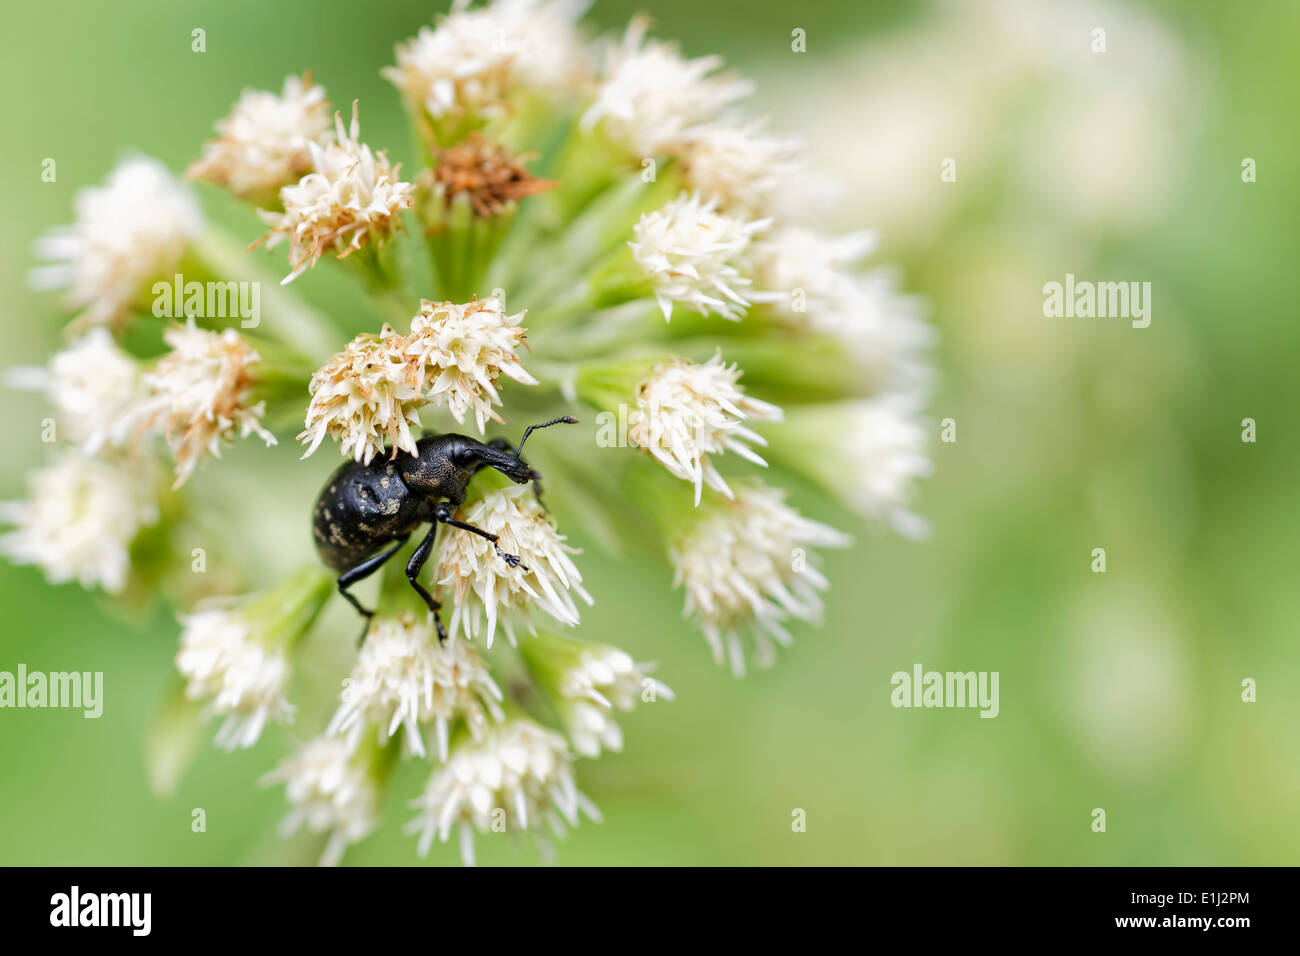 Stamm-Käfer, Curculionidae, auf Blüte, Leoben, Steiermark, Österreich Stockfoto